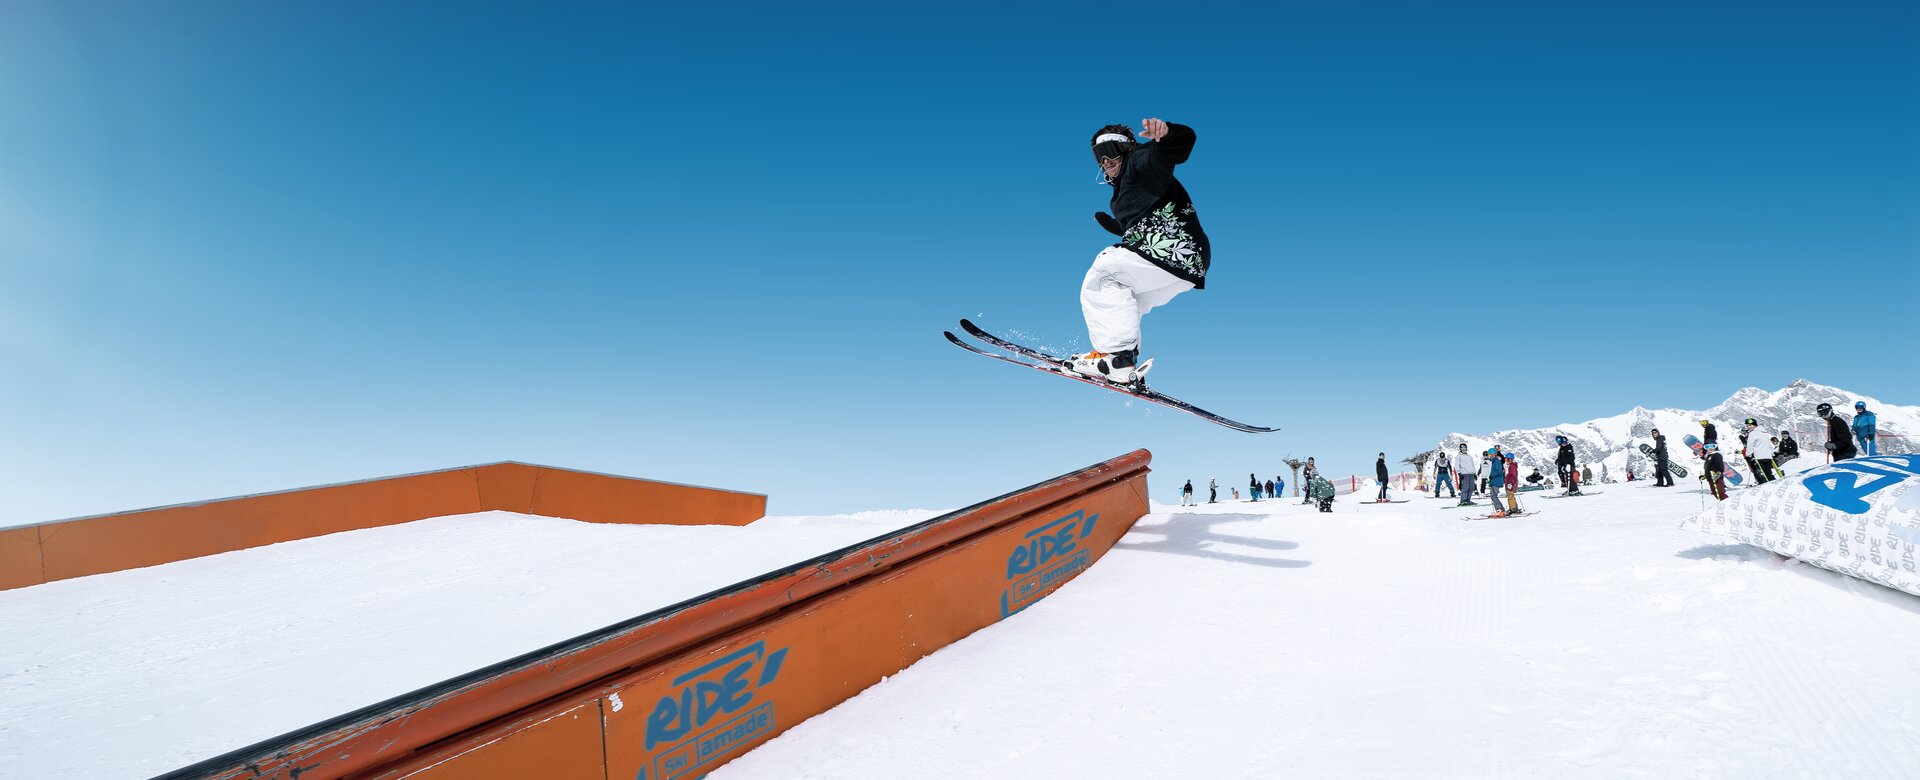 Freestyler springt mit quergestellten Ski auf eine Metallvorrichtung auf der man hinunter gleiten kann